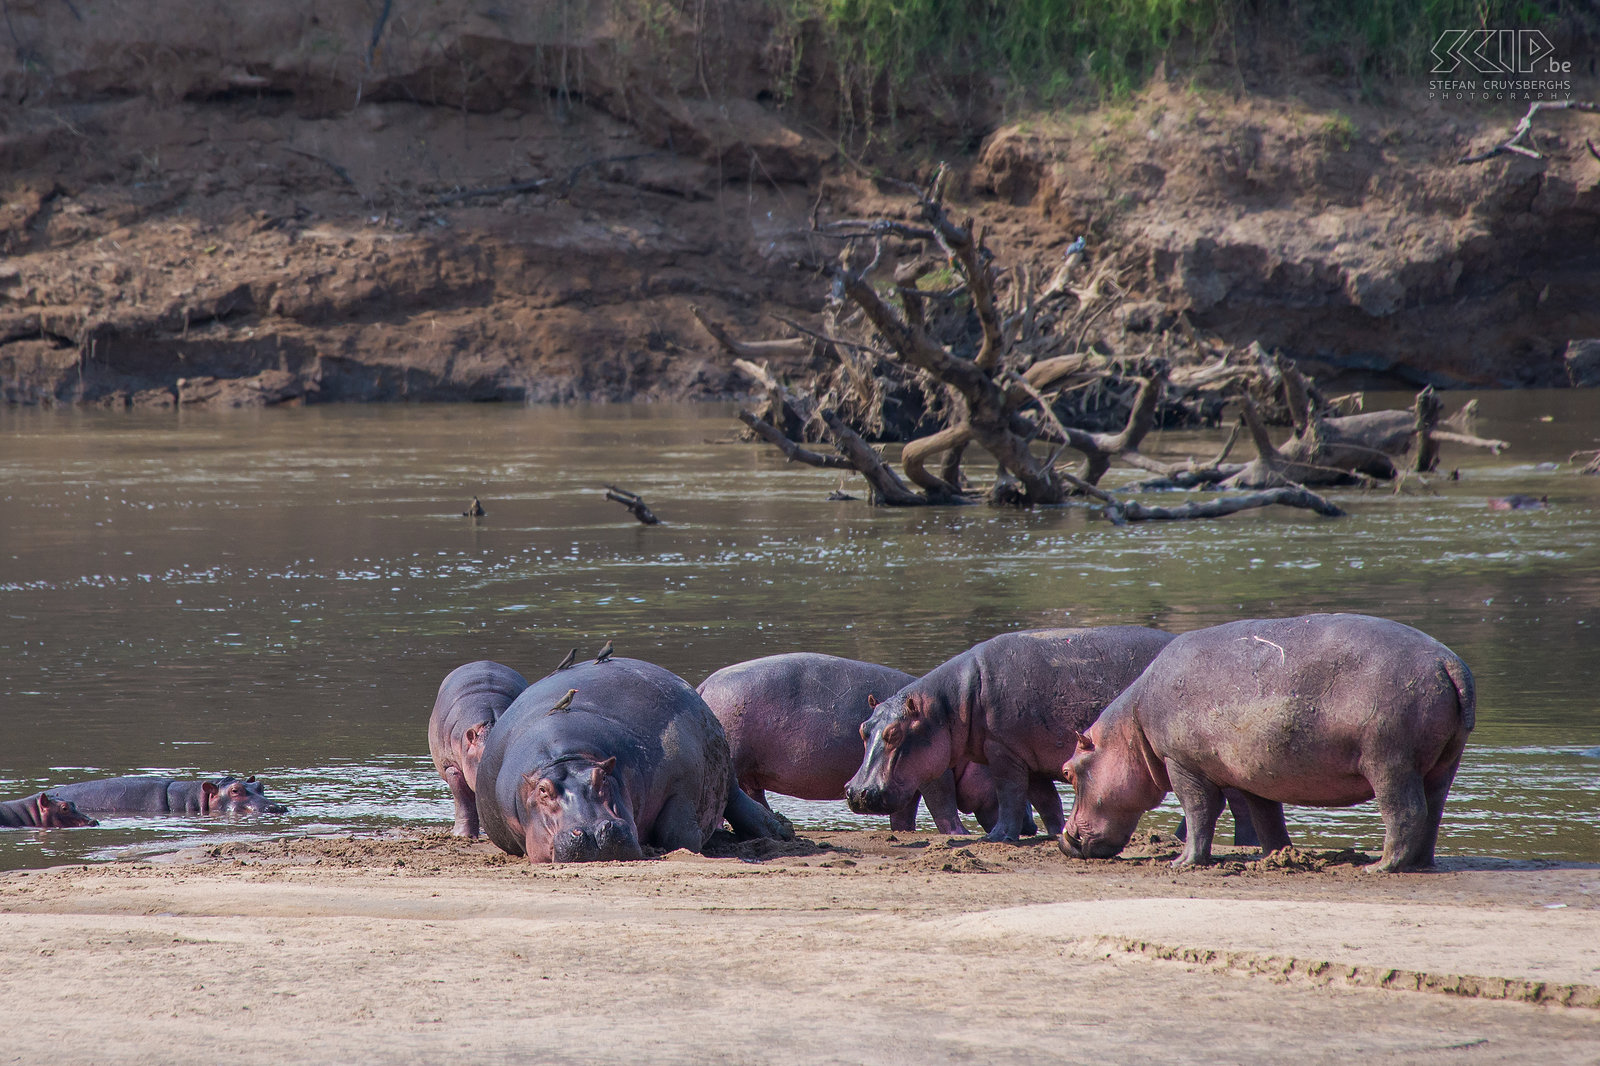 South Luangwa - Nijlpaarden Vlak voor onze tent aan de lodge waren vaak grote groepen nijlpaarden (Hippo, Hippopotamus amphibius) te zien in de Luangwa rivier. Deze grote stier is enorm en weegt waarschijnlijk meer dan 3 ton. Stefan Cruysberghs